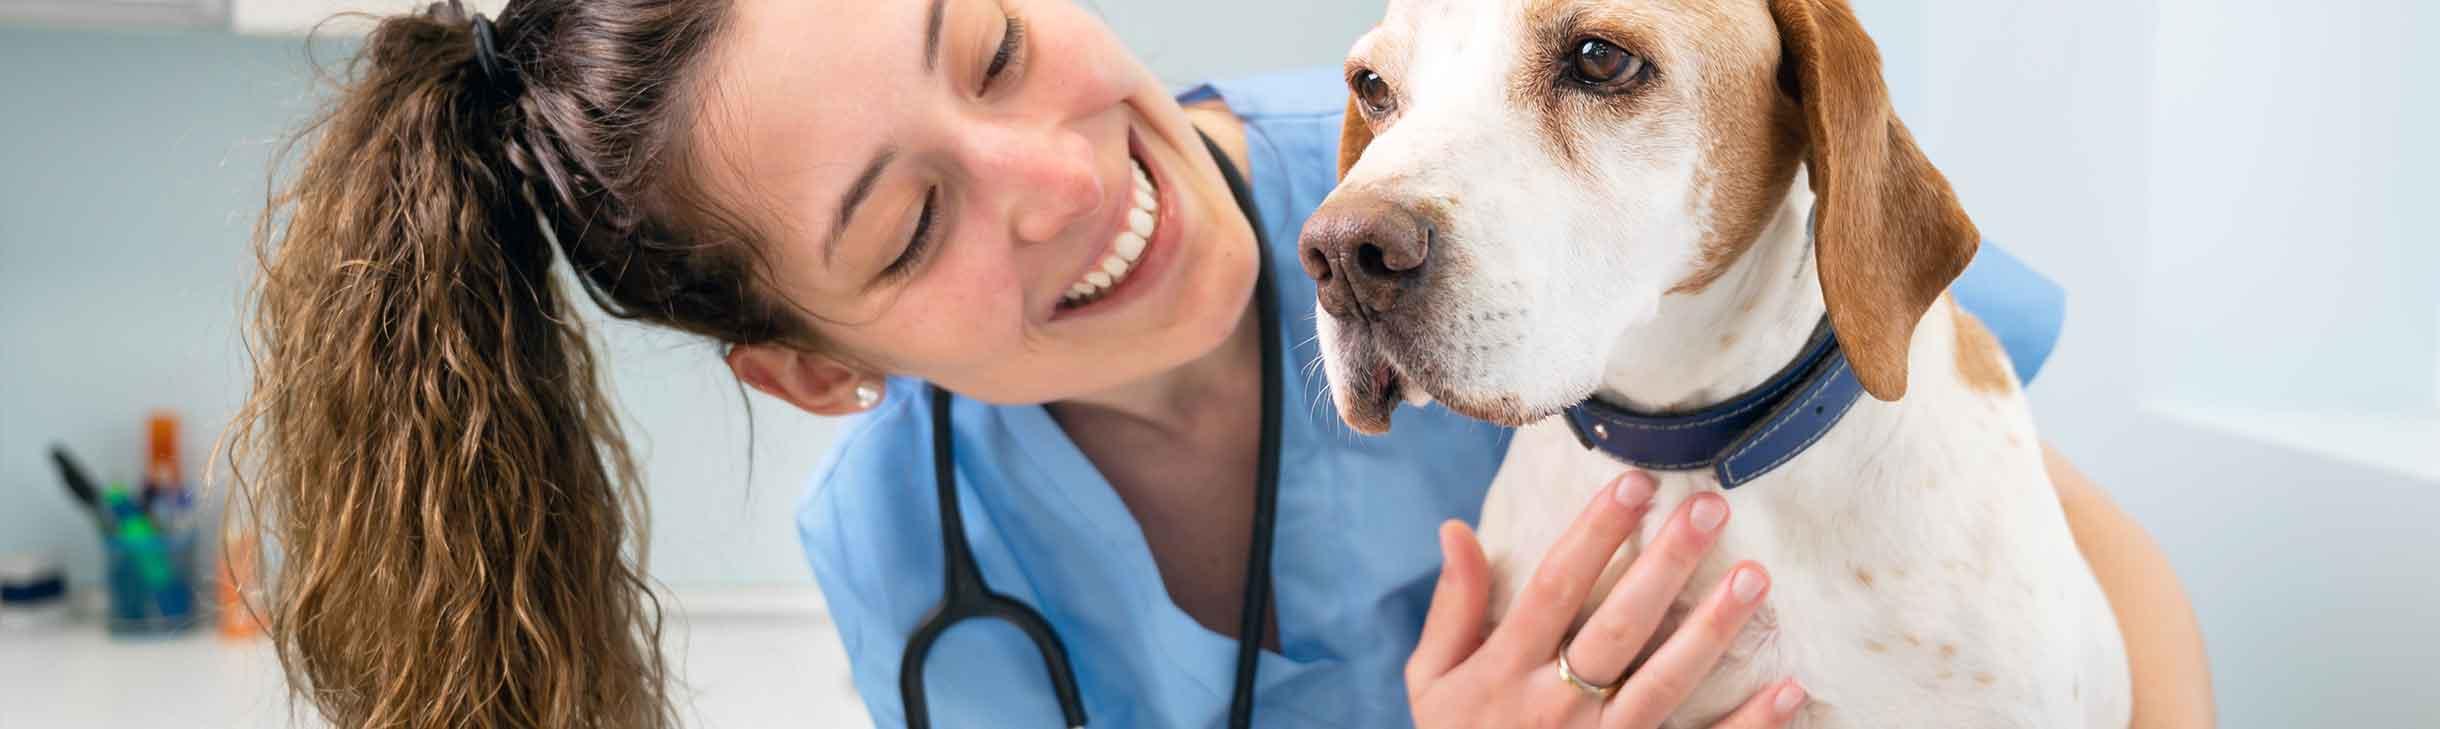 Hund beim Tierarzt zur Vorsorge-Untersuchung.